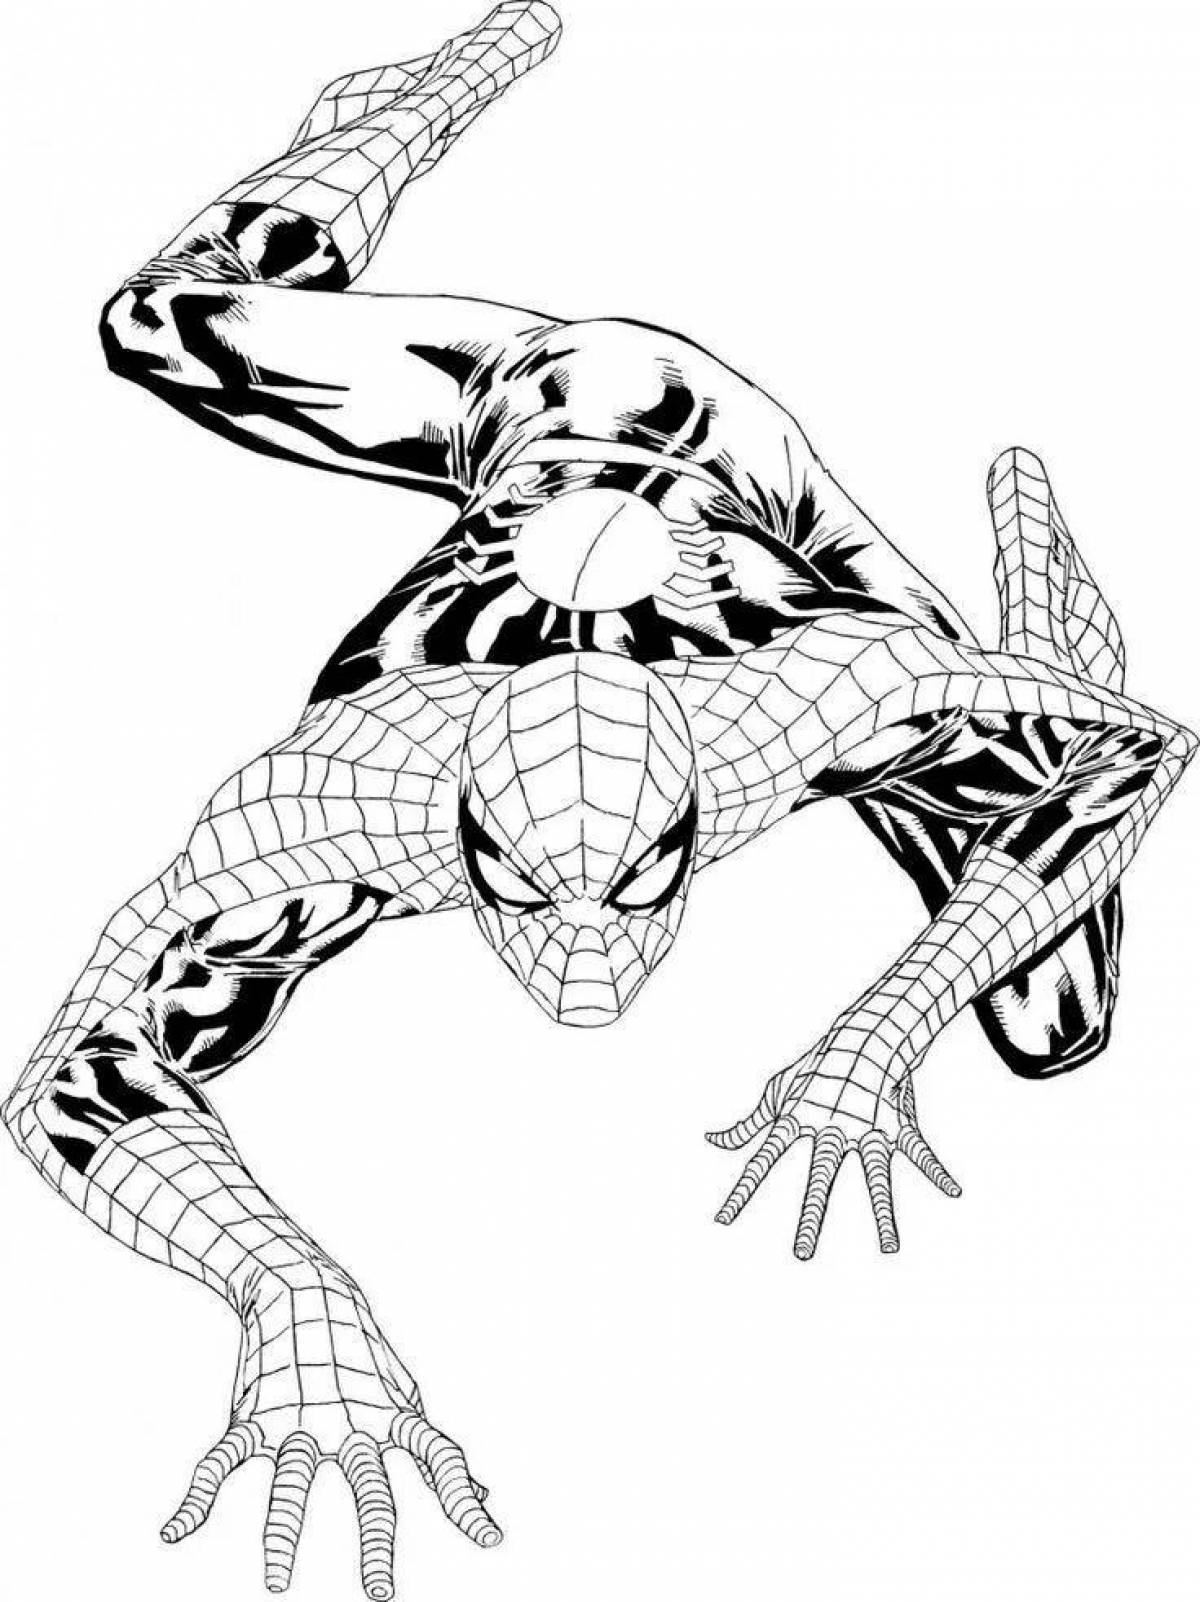 Ослепительный рисунок человека-паука